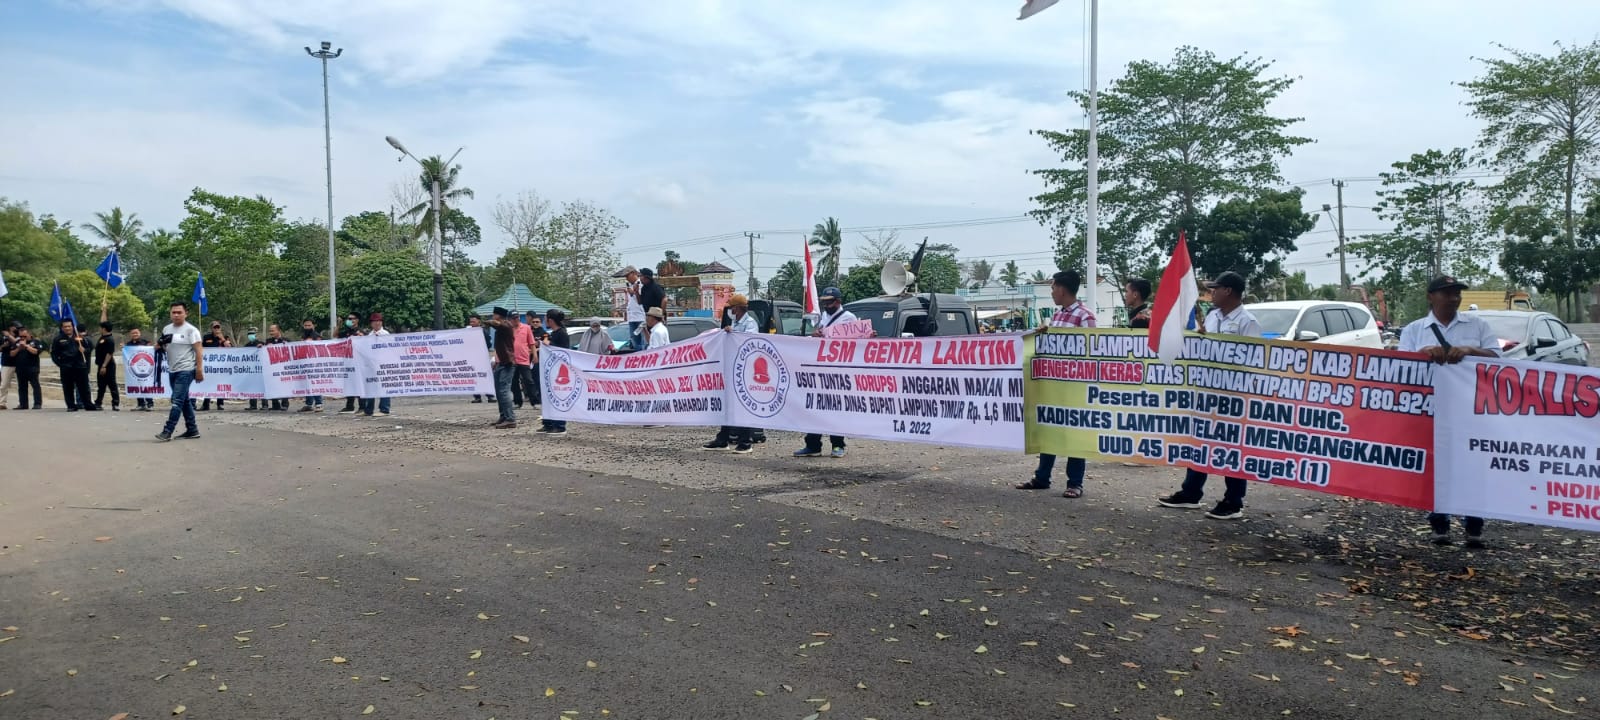 Ratusan BPJS untuk Warga Miskin Dinonaktifkan, Begini Tanggapan Pemkab Lampung Timur